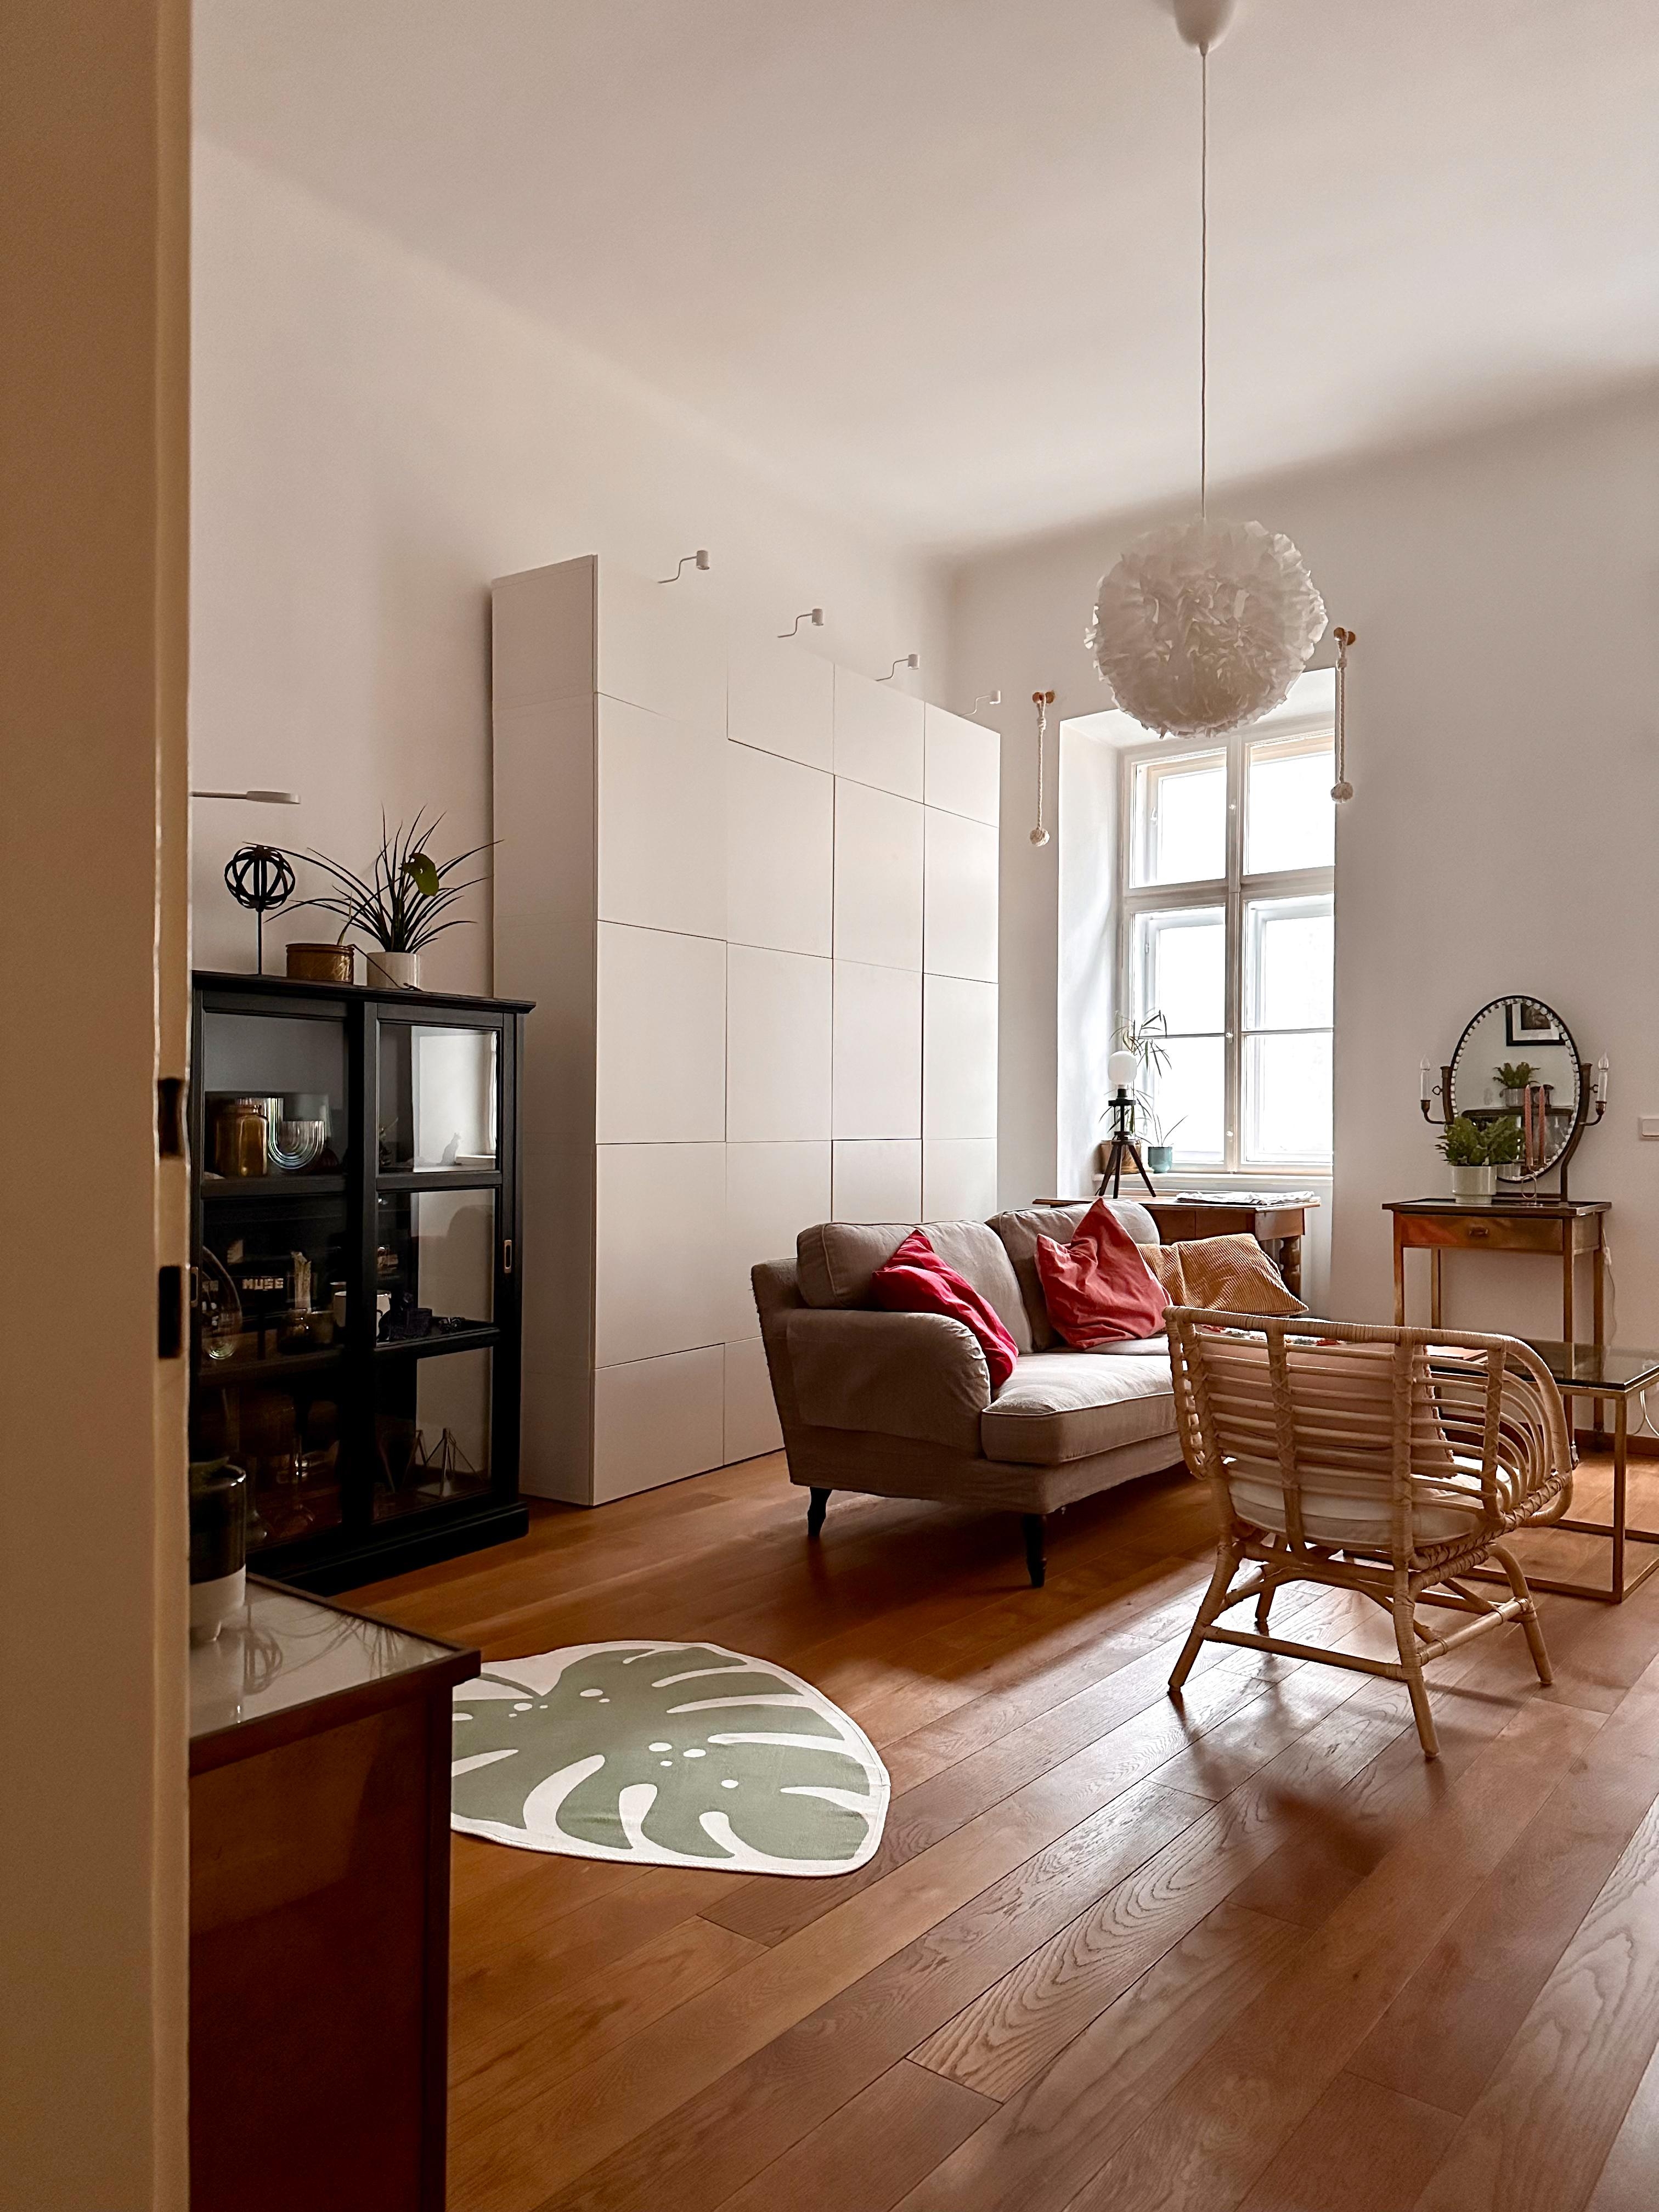 Wohnzimmer Einblicke :)

#wohnzimmer #licht #couch #sofa #teppich #holz #stauraum #rattan